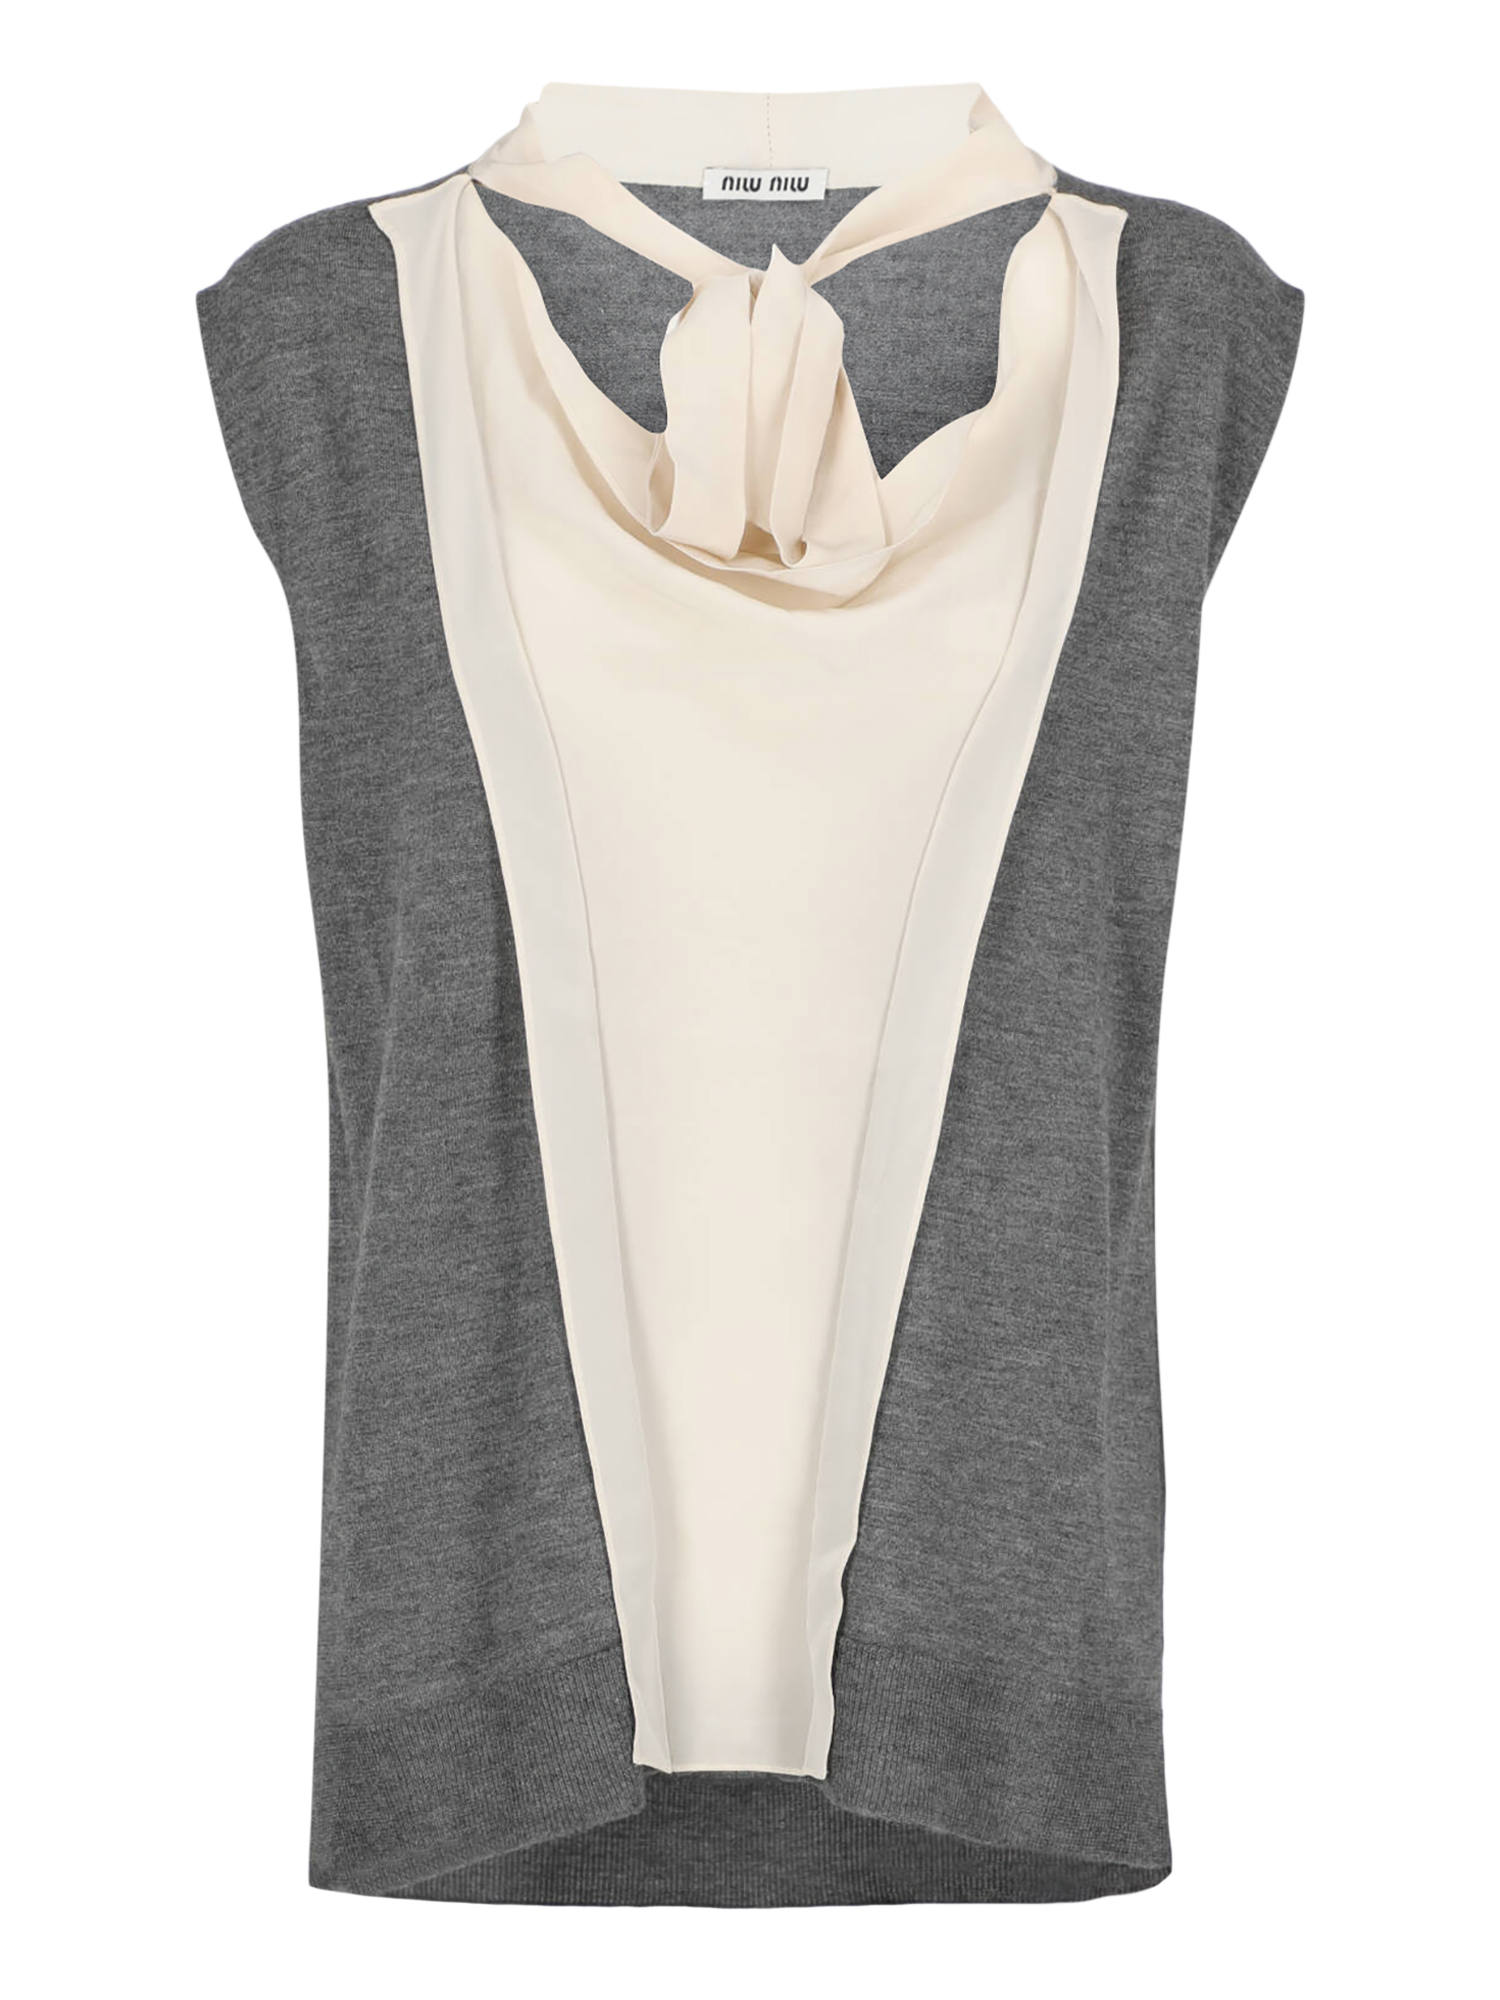 T-shirts Et Tops Pour Femme - Miu Miu - En Wool Grey - Taille:  -